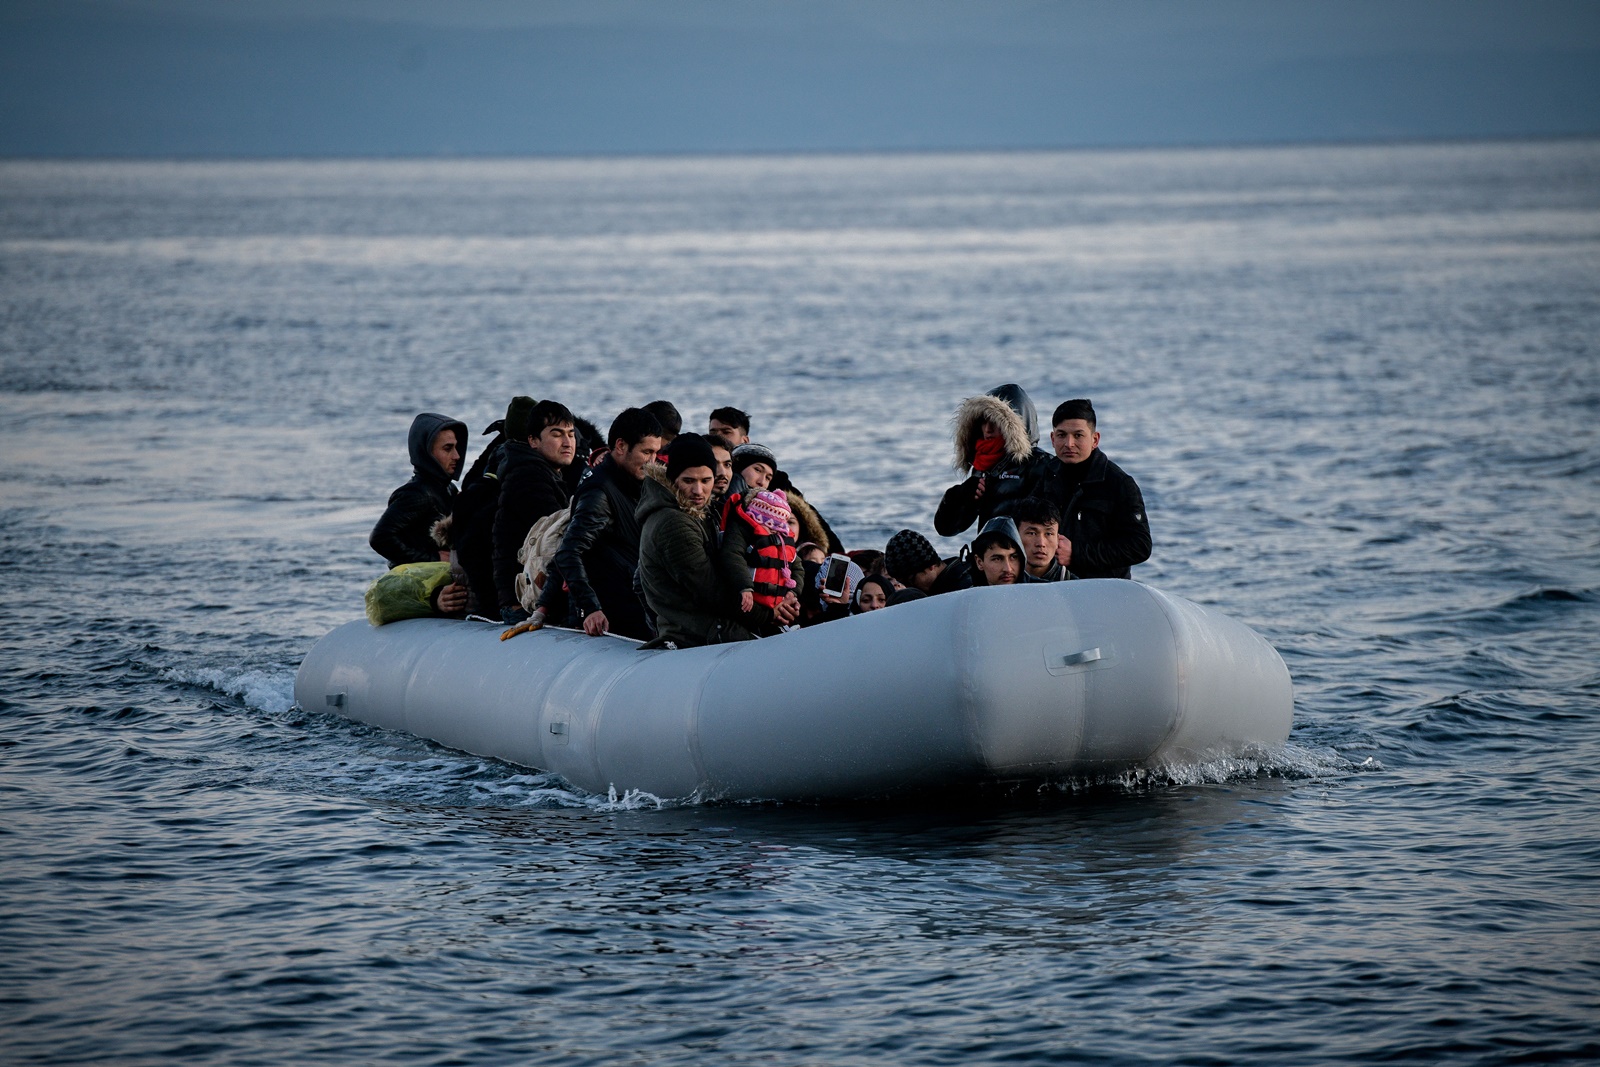 Ιάσονας Αποστολόπουλος – Ευρωκοινοβούλιο: «Οι ελληνικές αρχές πετάνε μετανάστες στη θάλασσα»